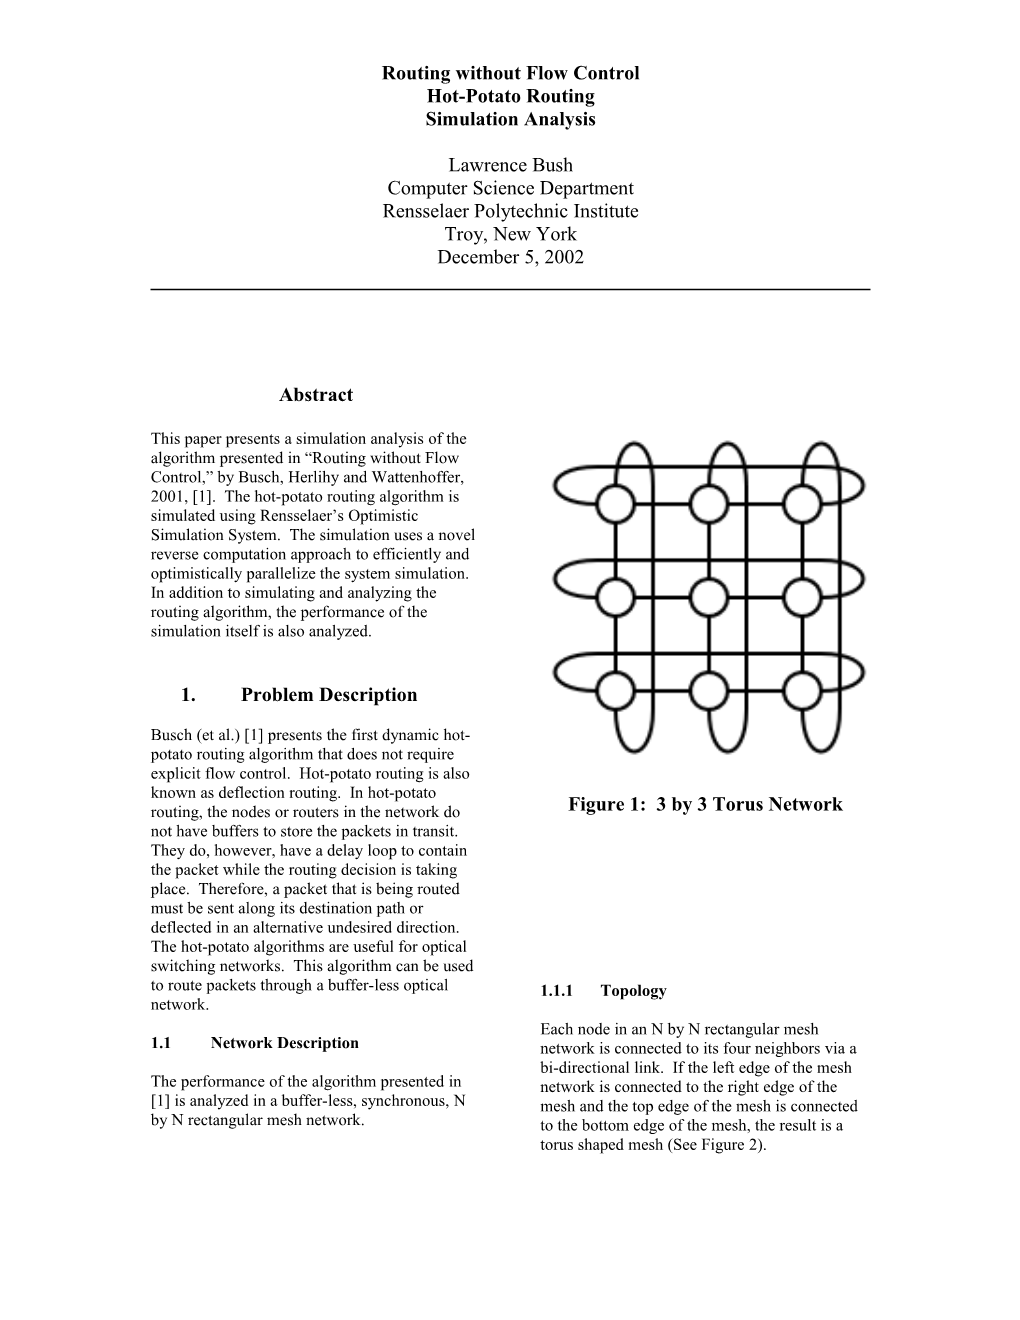 Figure 1: 3 by 3 Torus Network